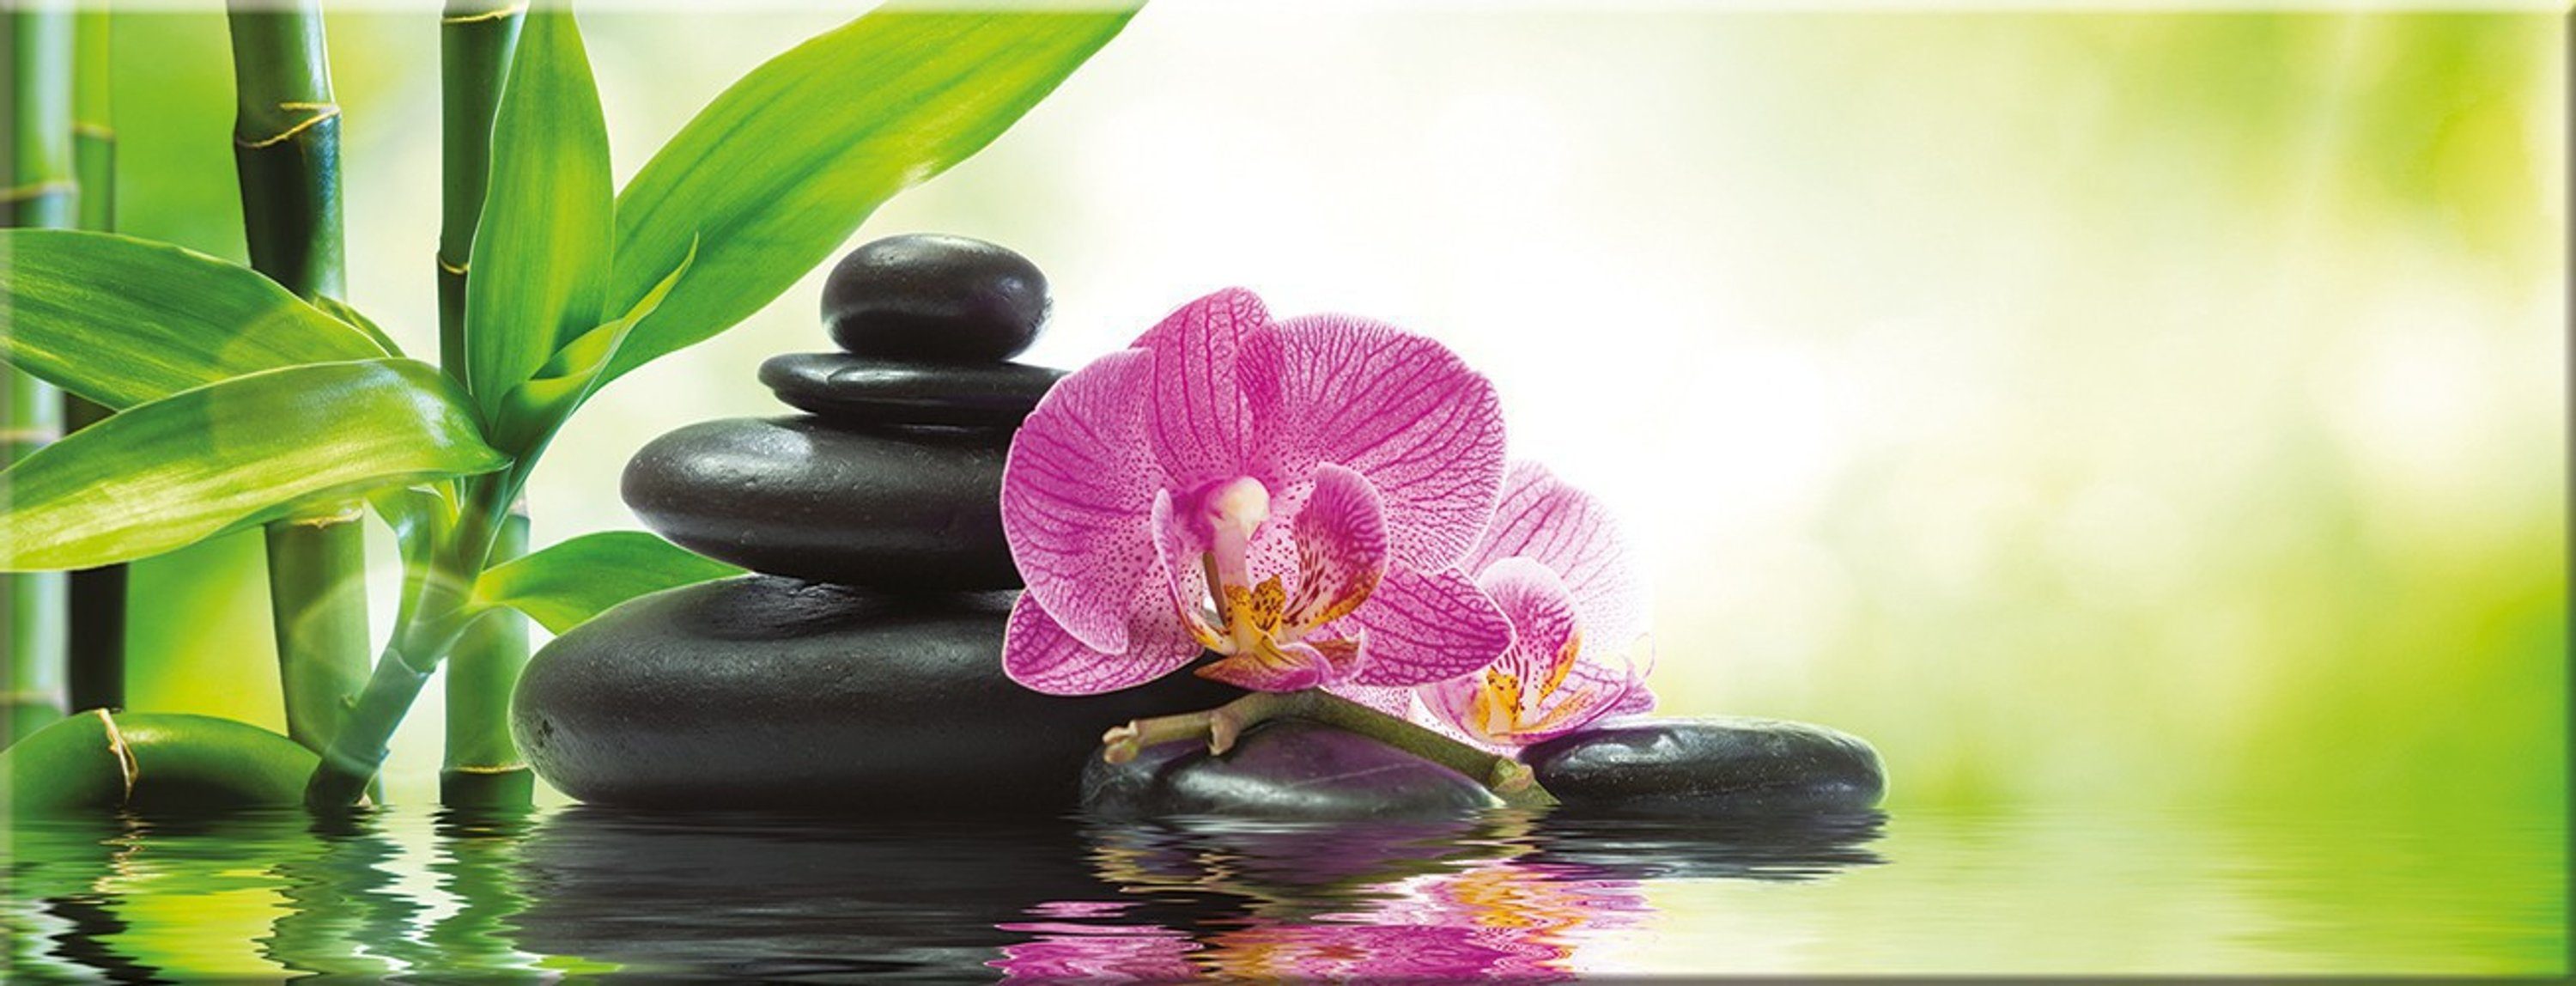 Glas Natur: Spa Steine Orchidee, Bild Bambus Wellness Glasbild aus Glasbild 80x30cm artissimo und Zen